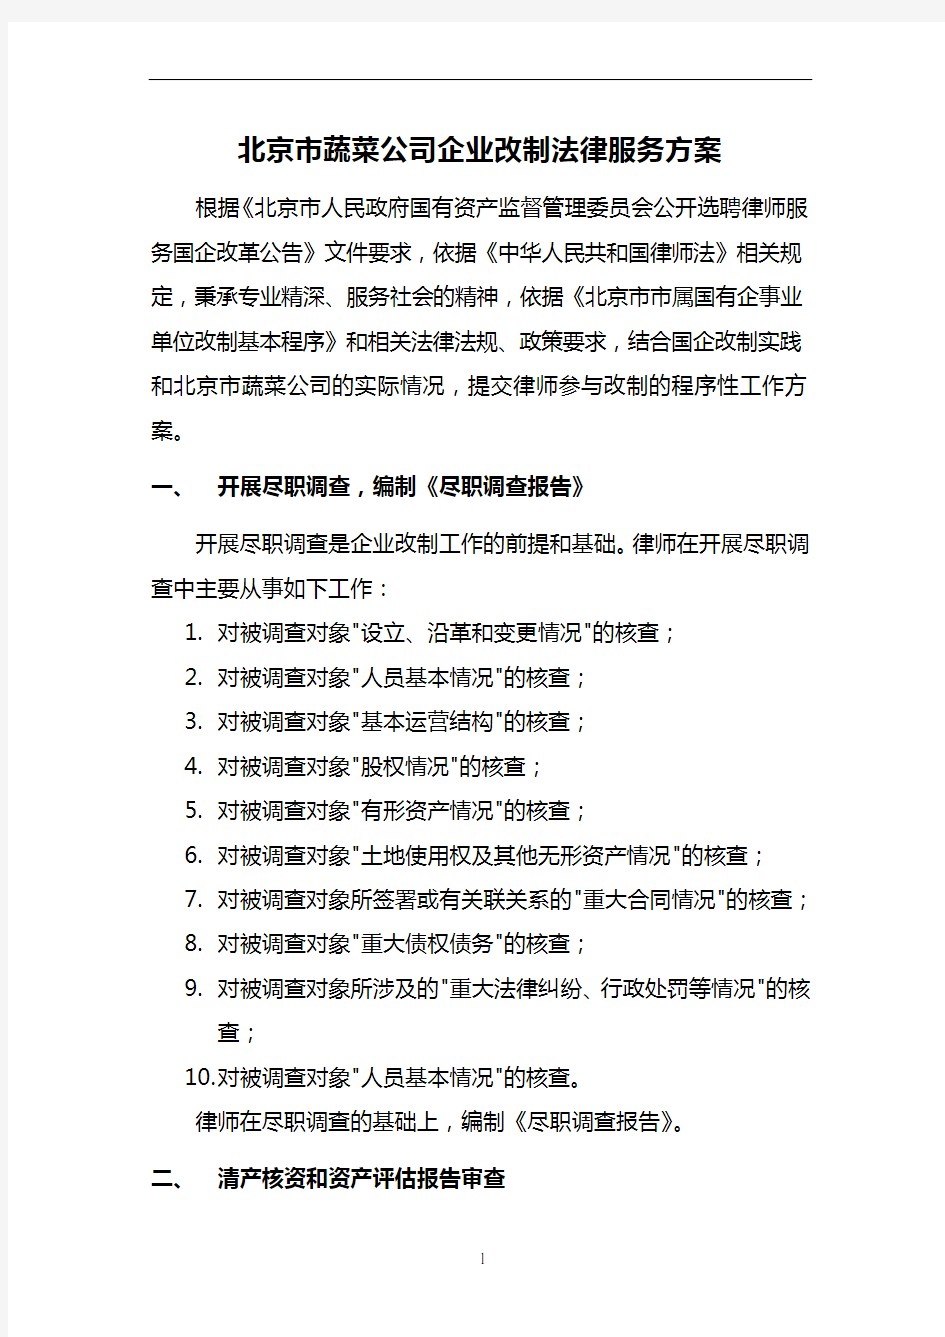 北京市蔬菜公司企业改制法律服务方案